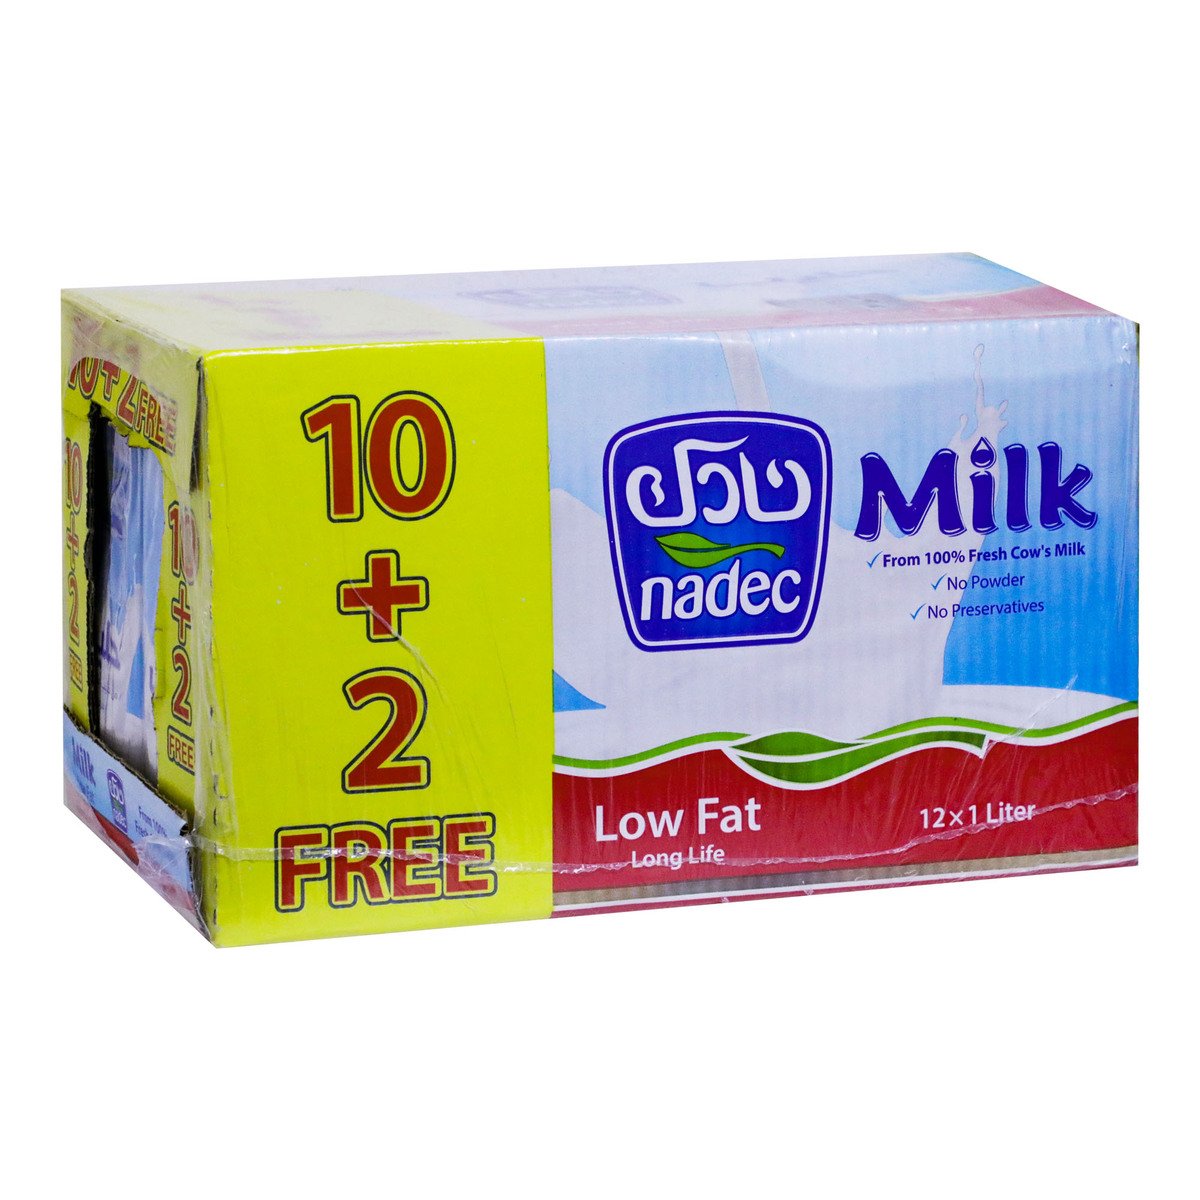 Nadec Long Life Low Fat Milk 12 x 1Litre